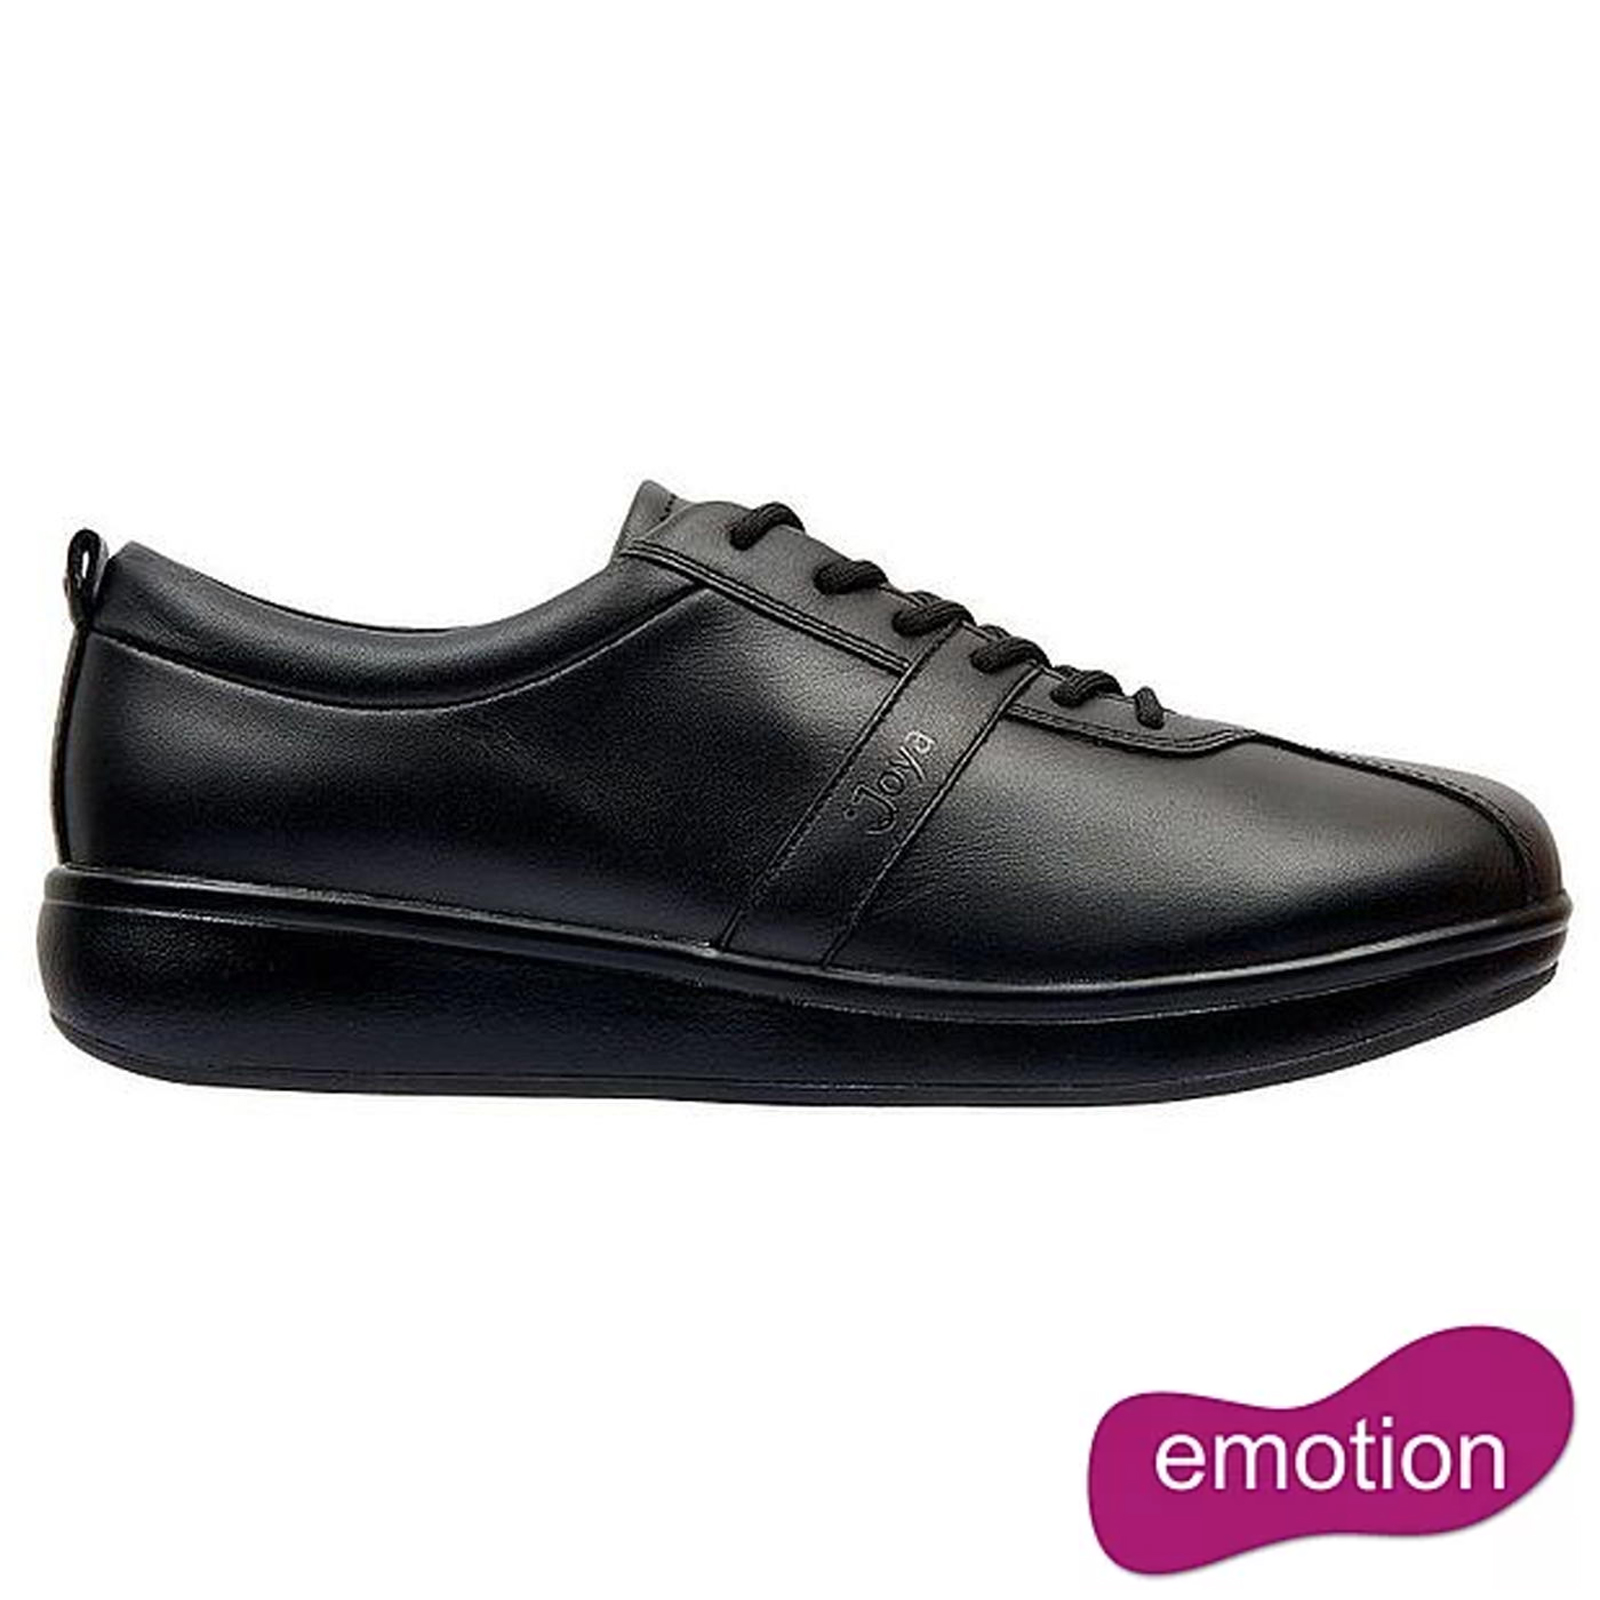 Joya Women's Emma Emotion Leather Lace Up Shoes - Black